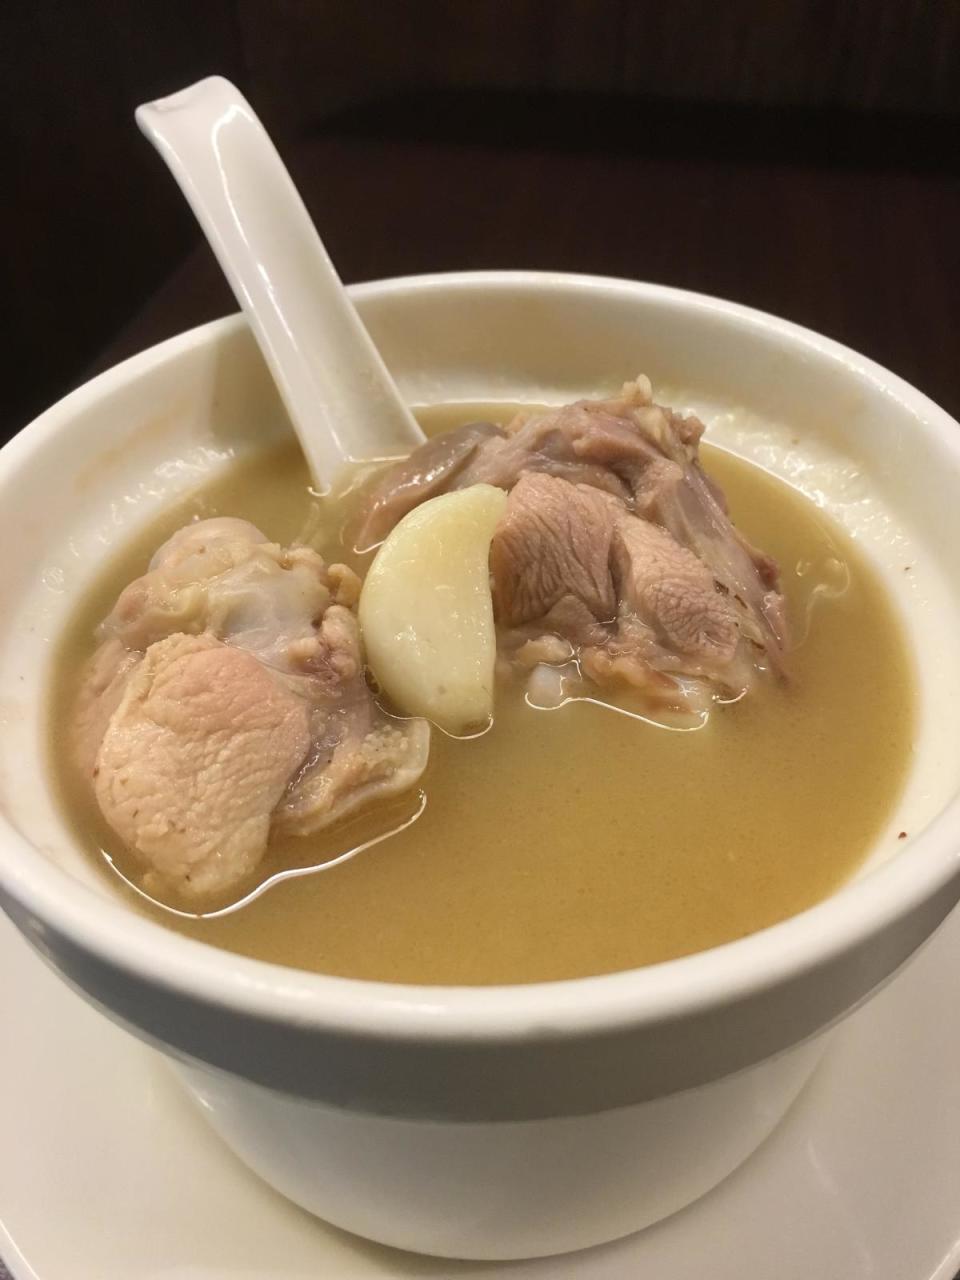 「蒜頭煲雞湯」的湯頭甘美黏嘴，土雞腿肉有咬勁，整顆的蒜仁鬆綿不帶嗆味。（200元／小份）